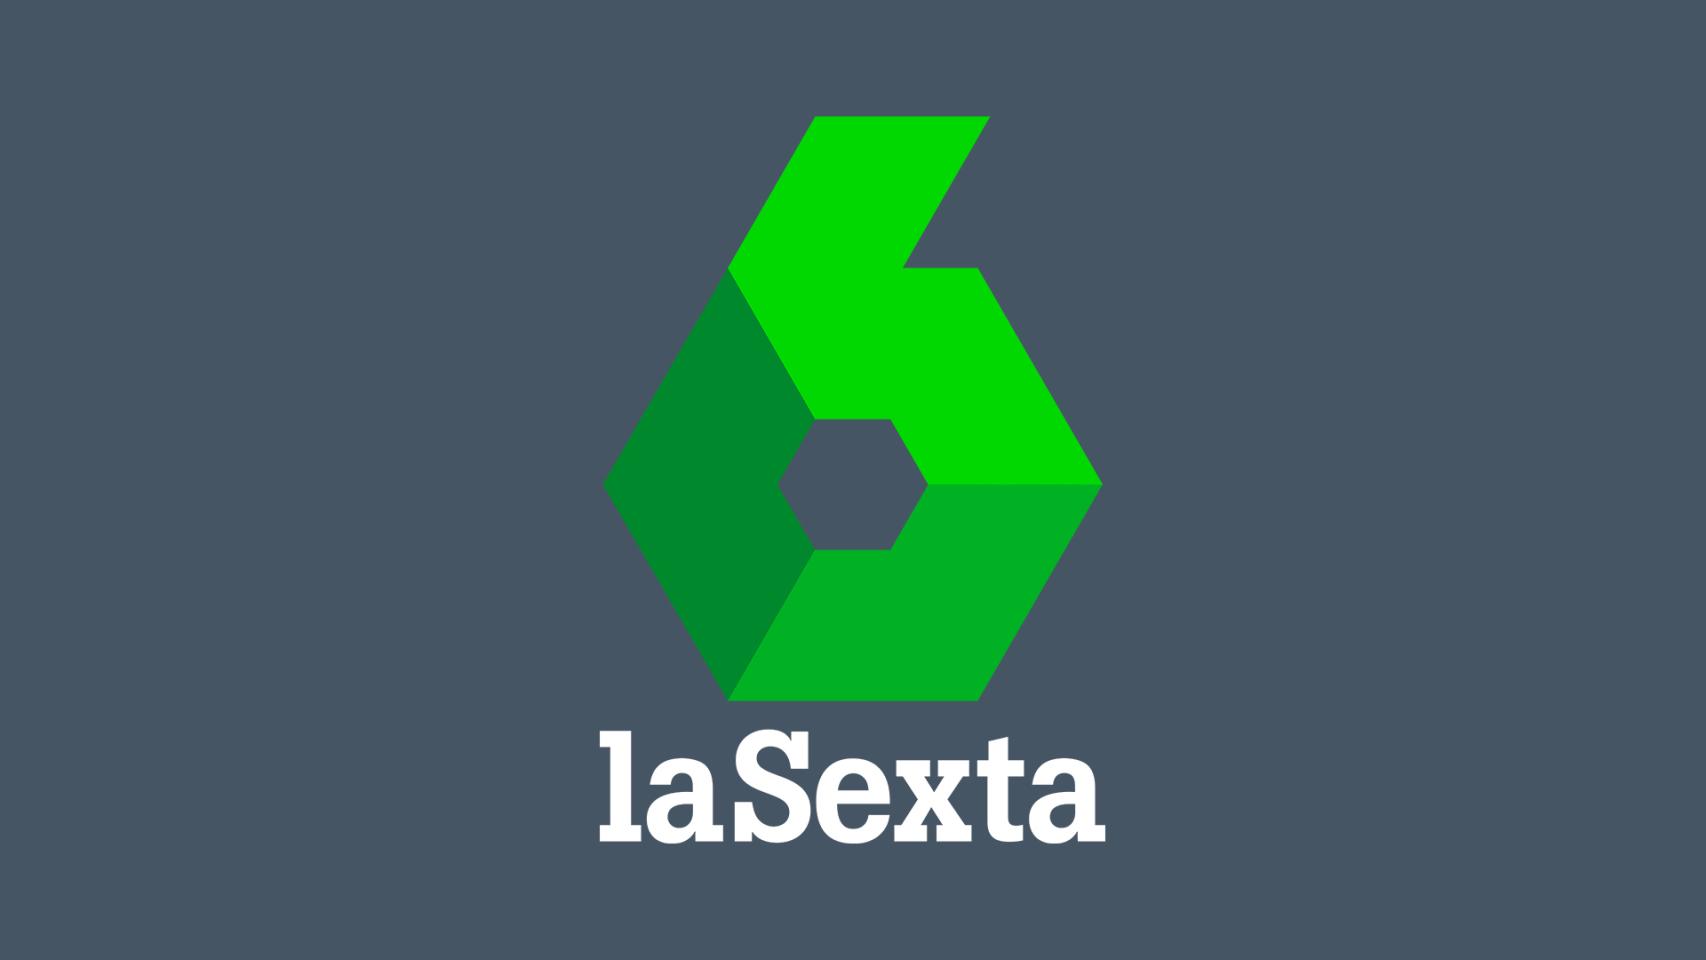 El nuevo logo de laSexta.